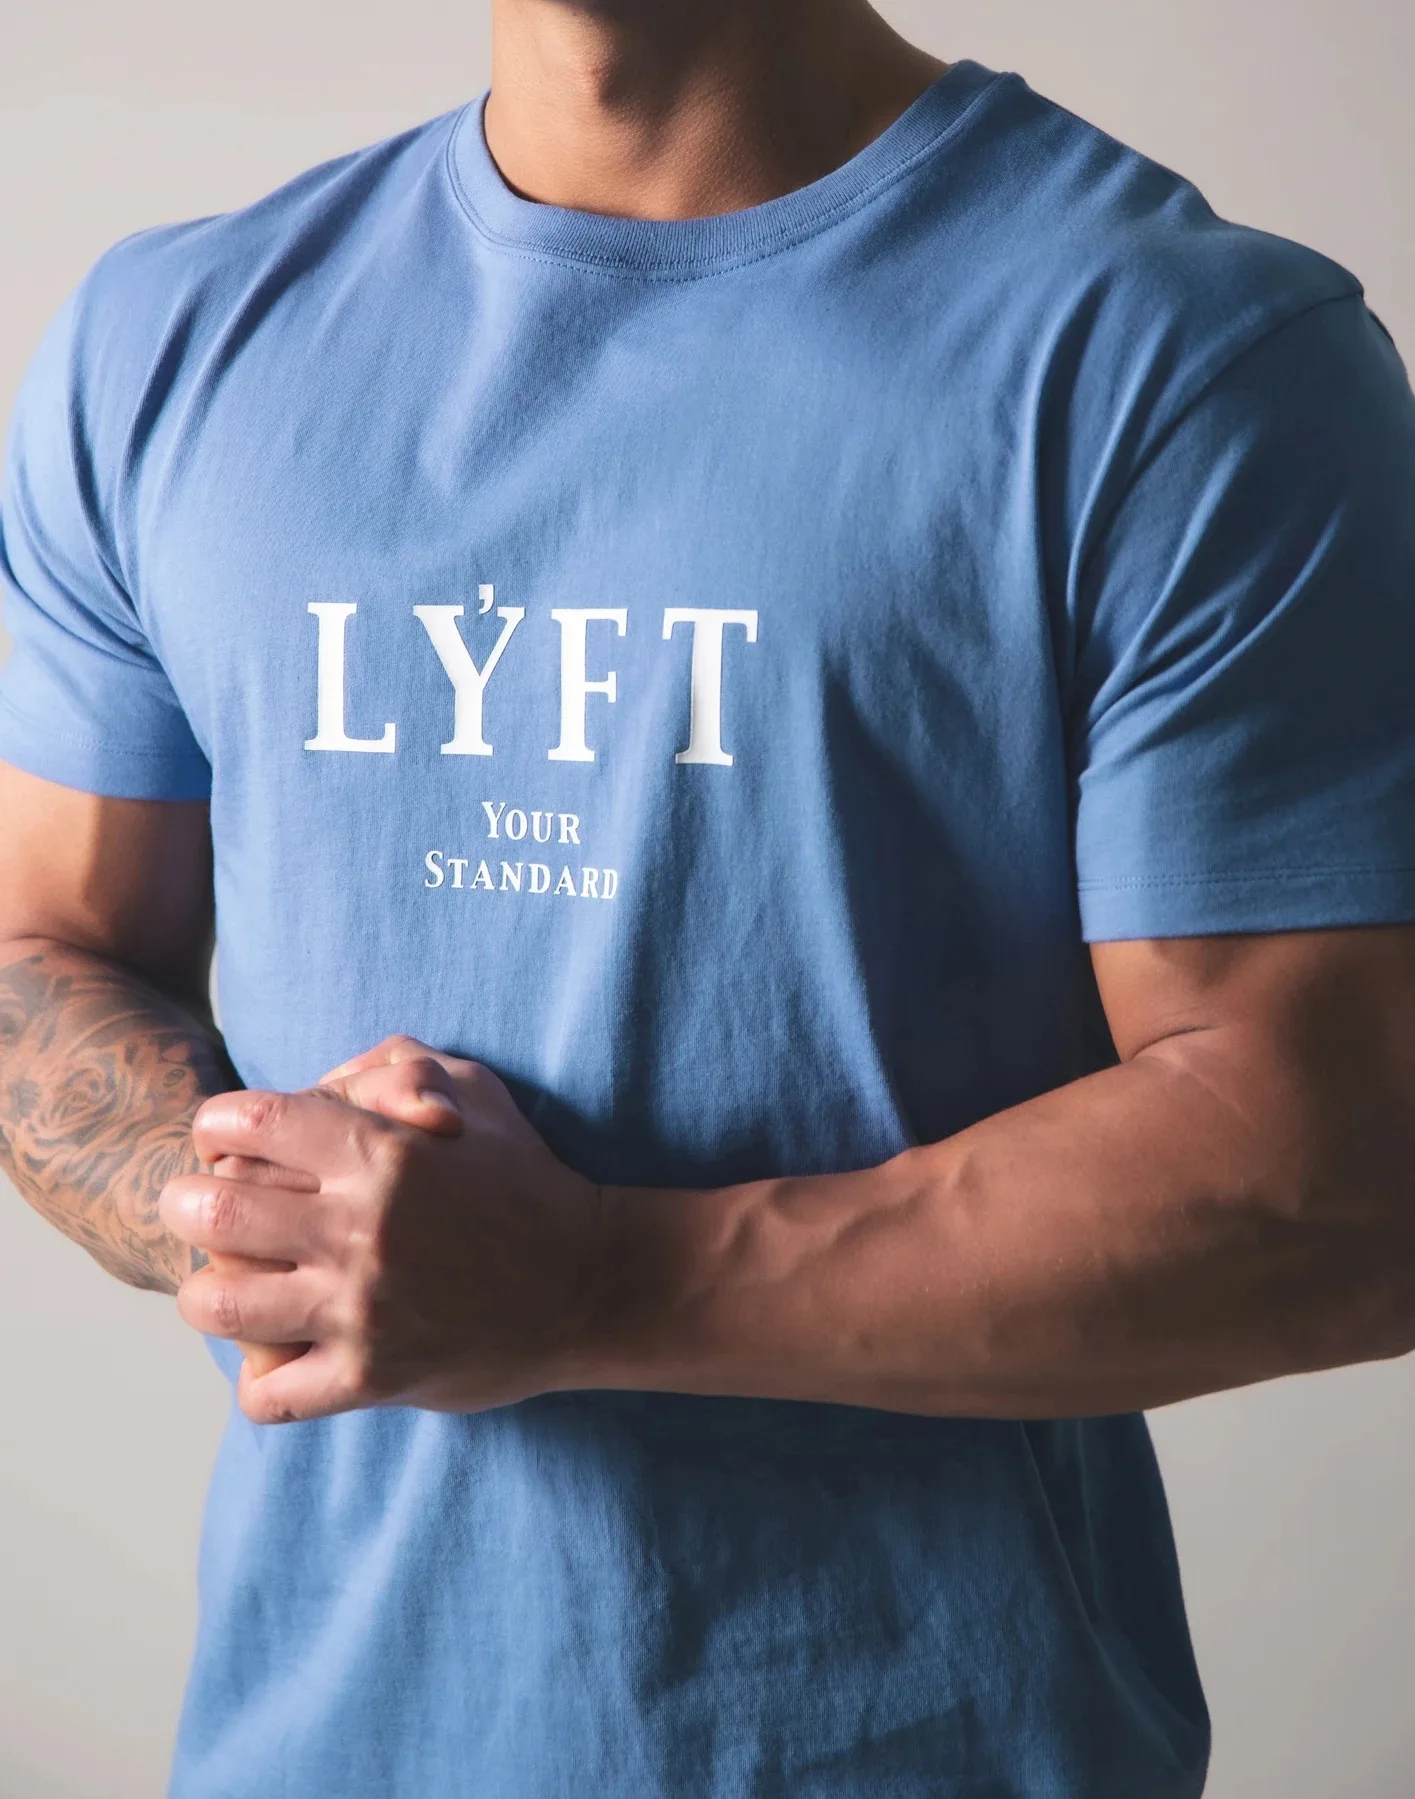 Lyft Muscle Shirt